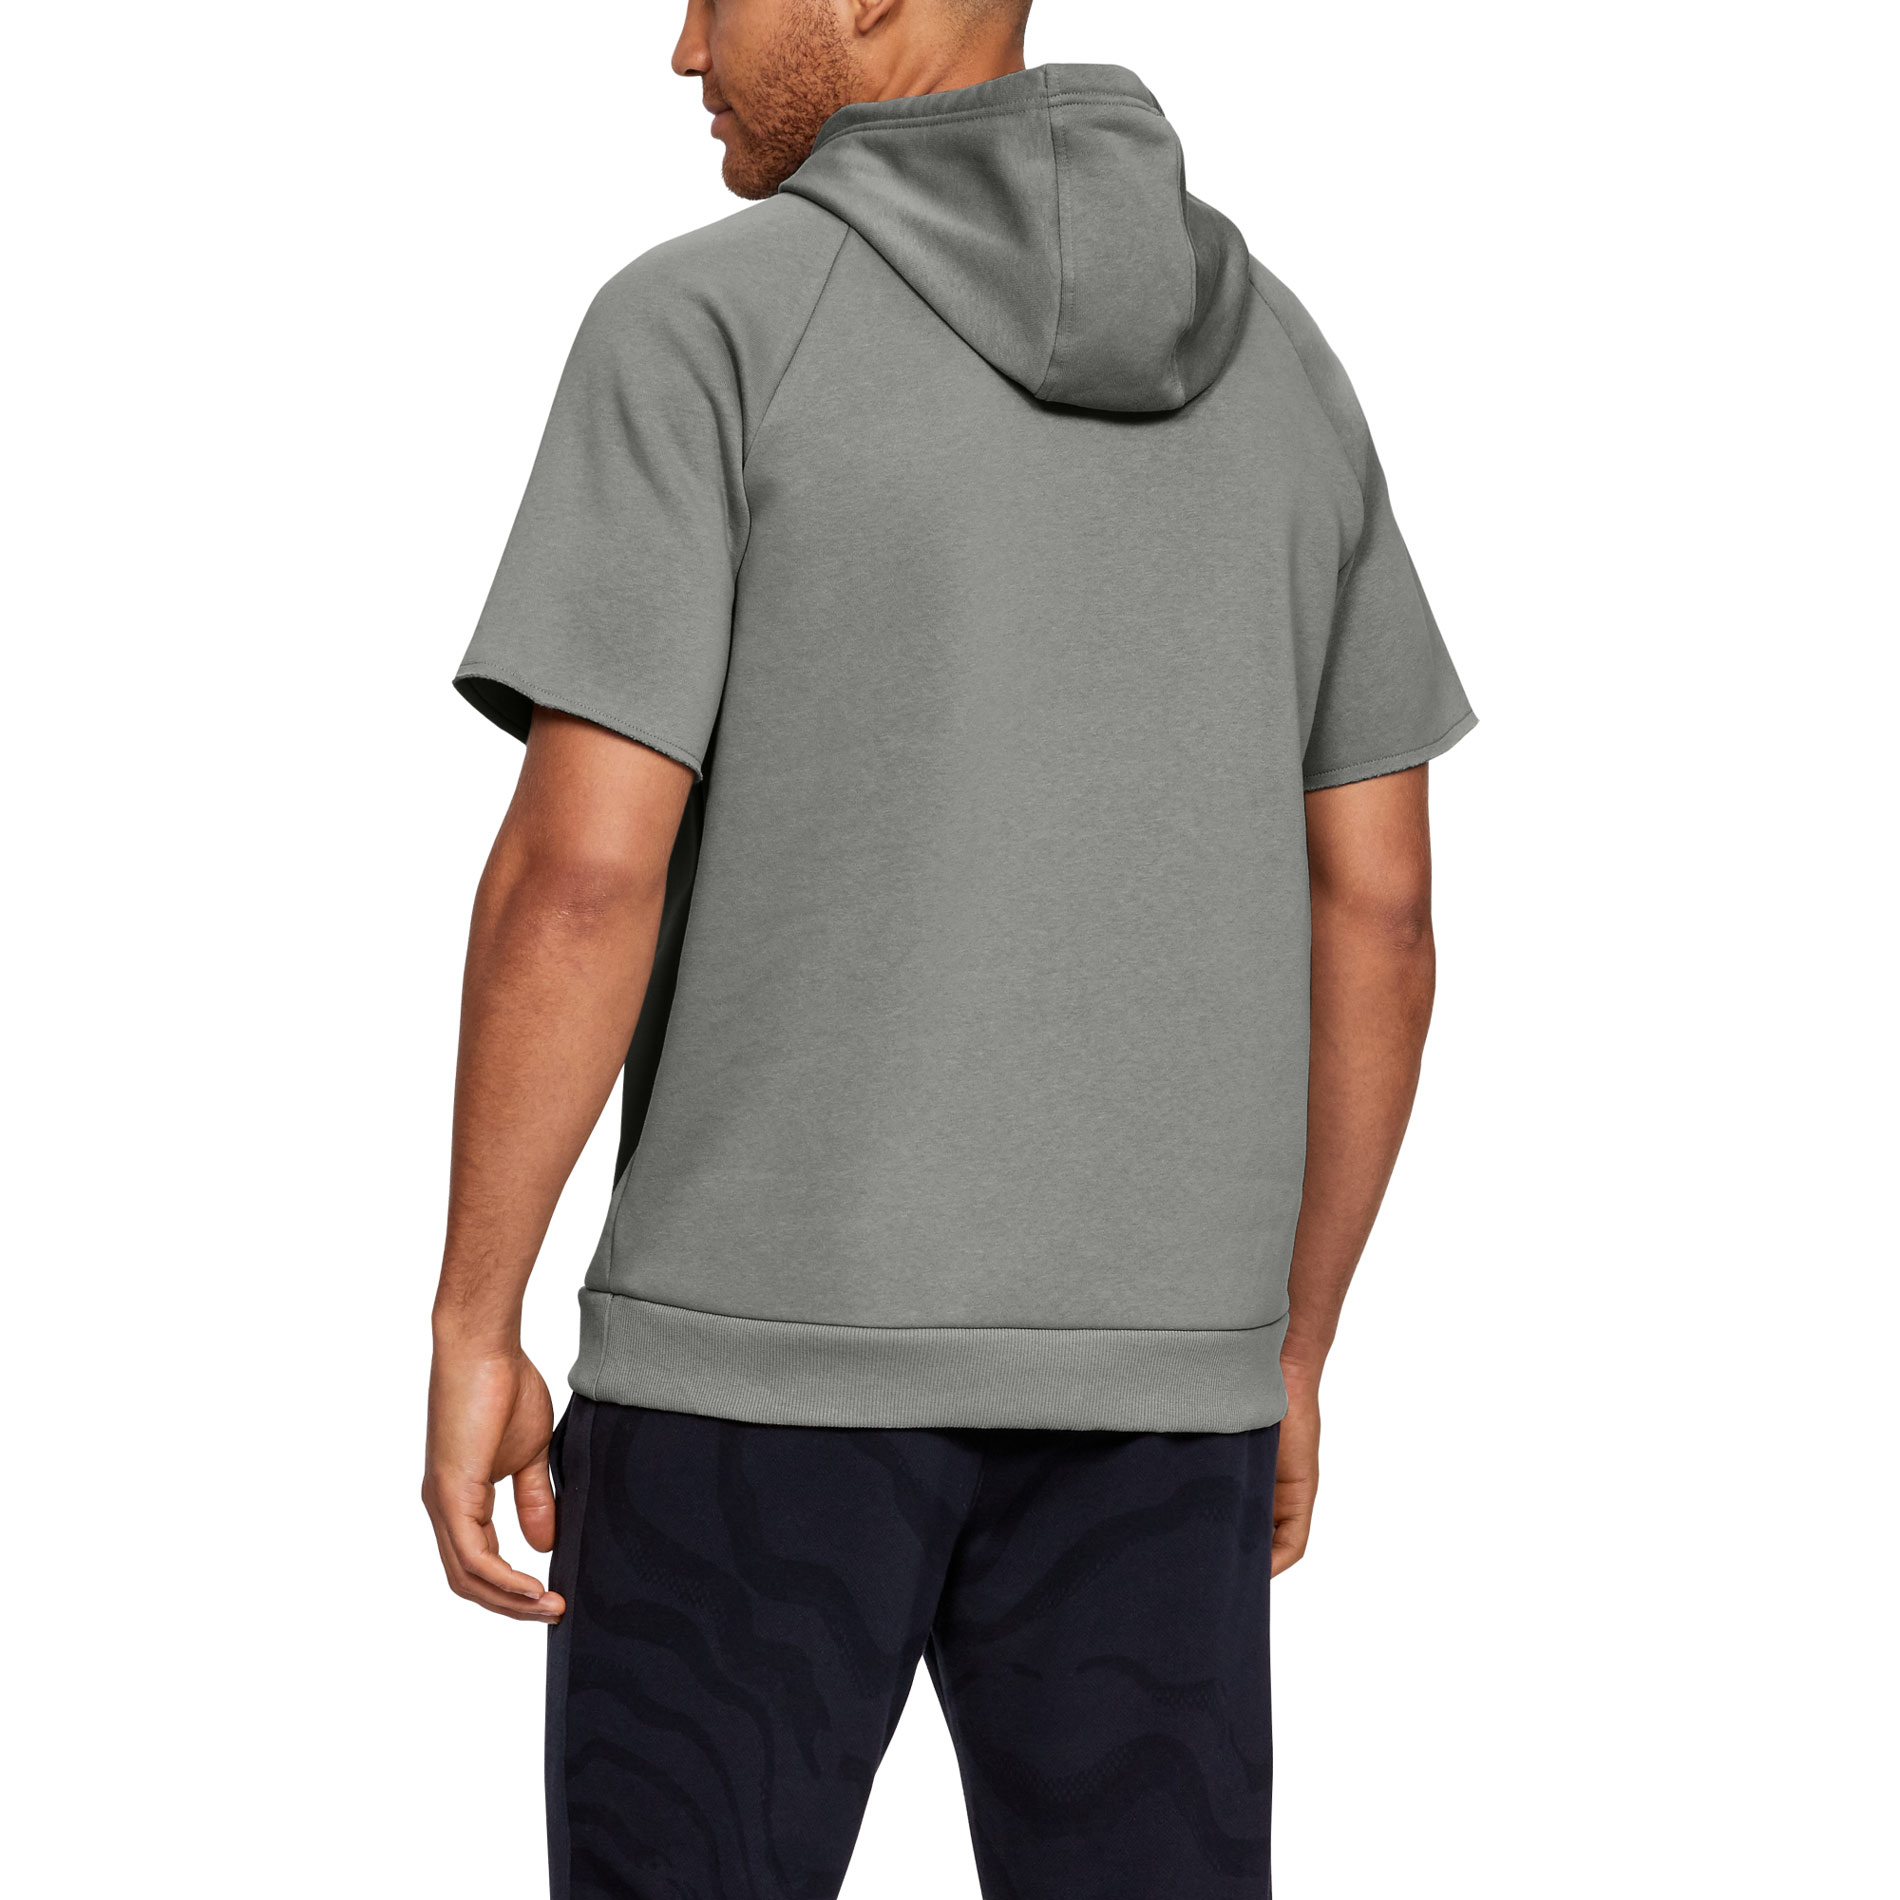 Men’s sweatshirt